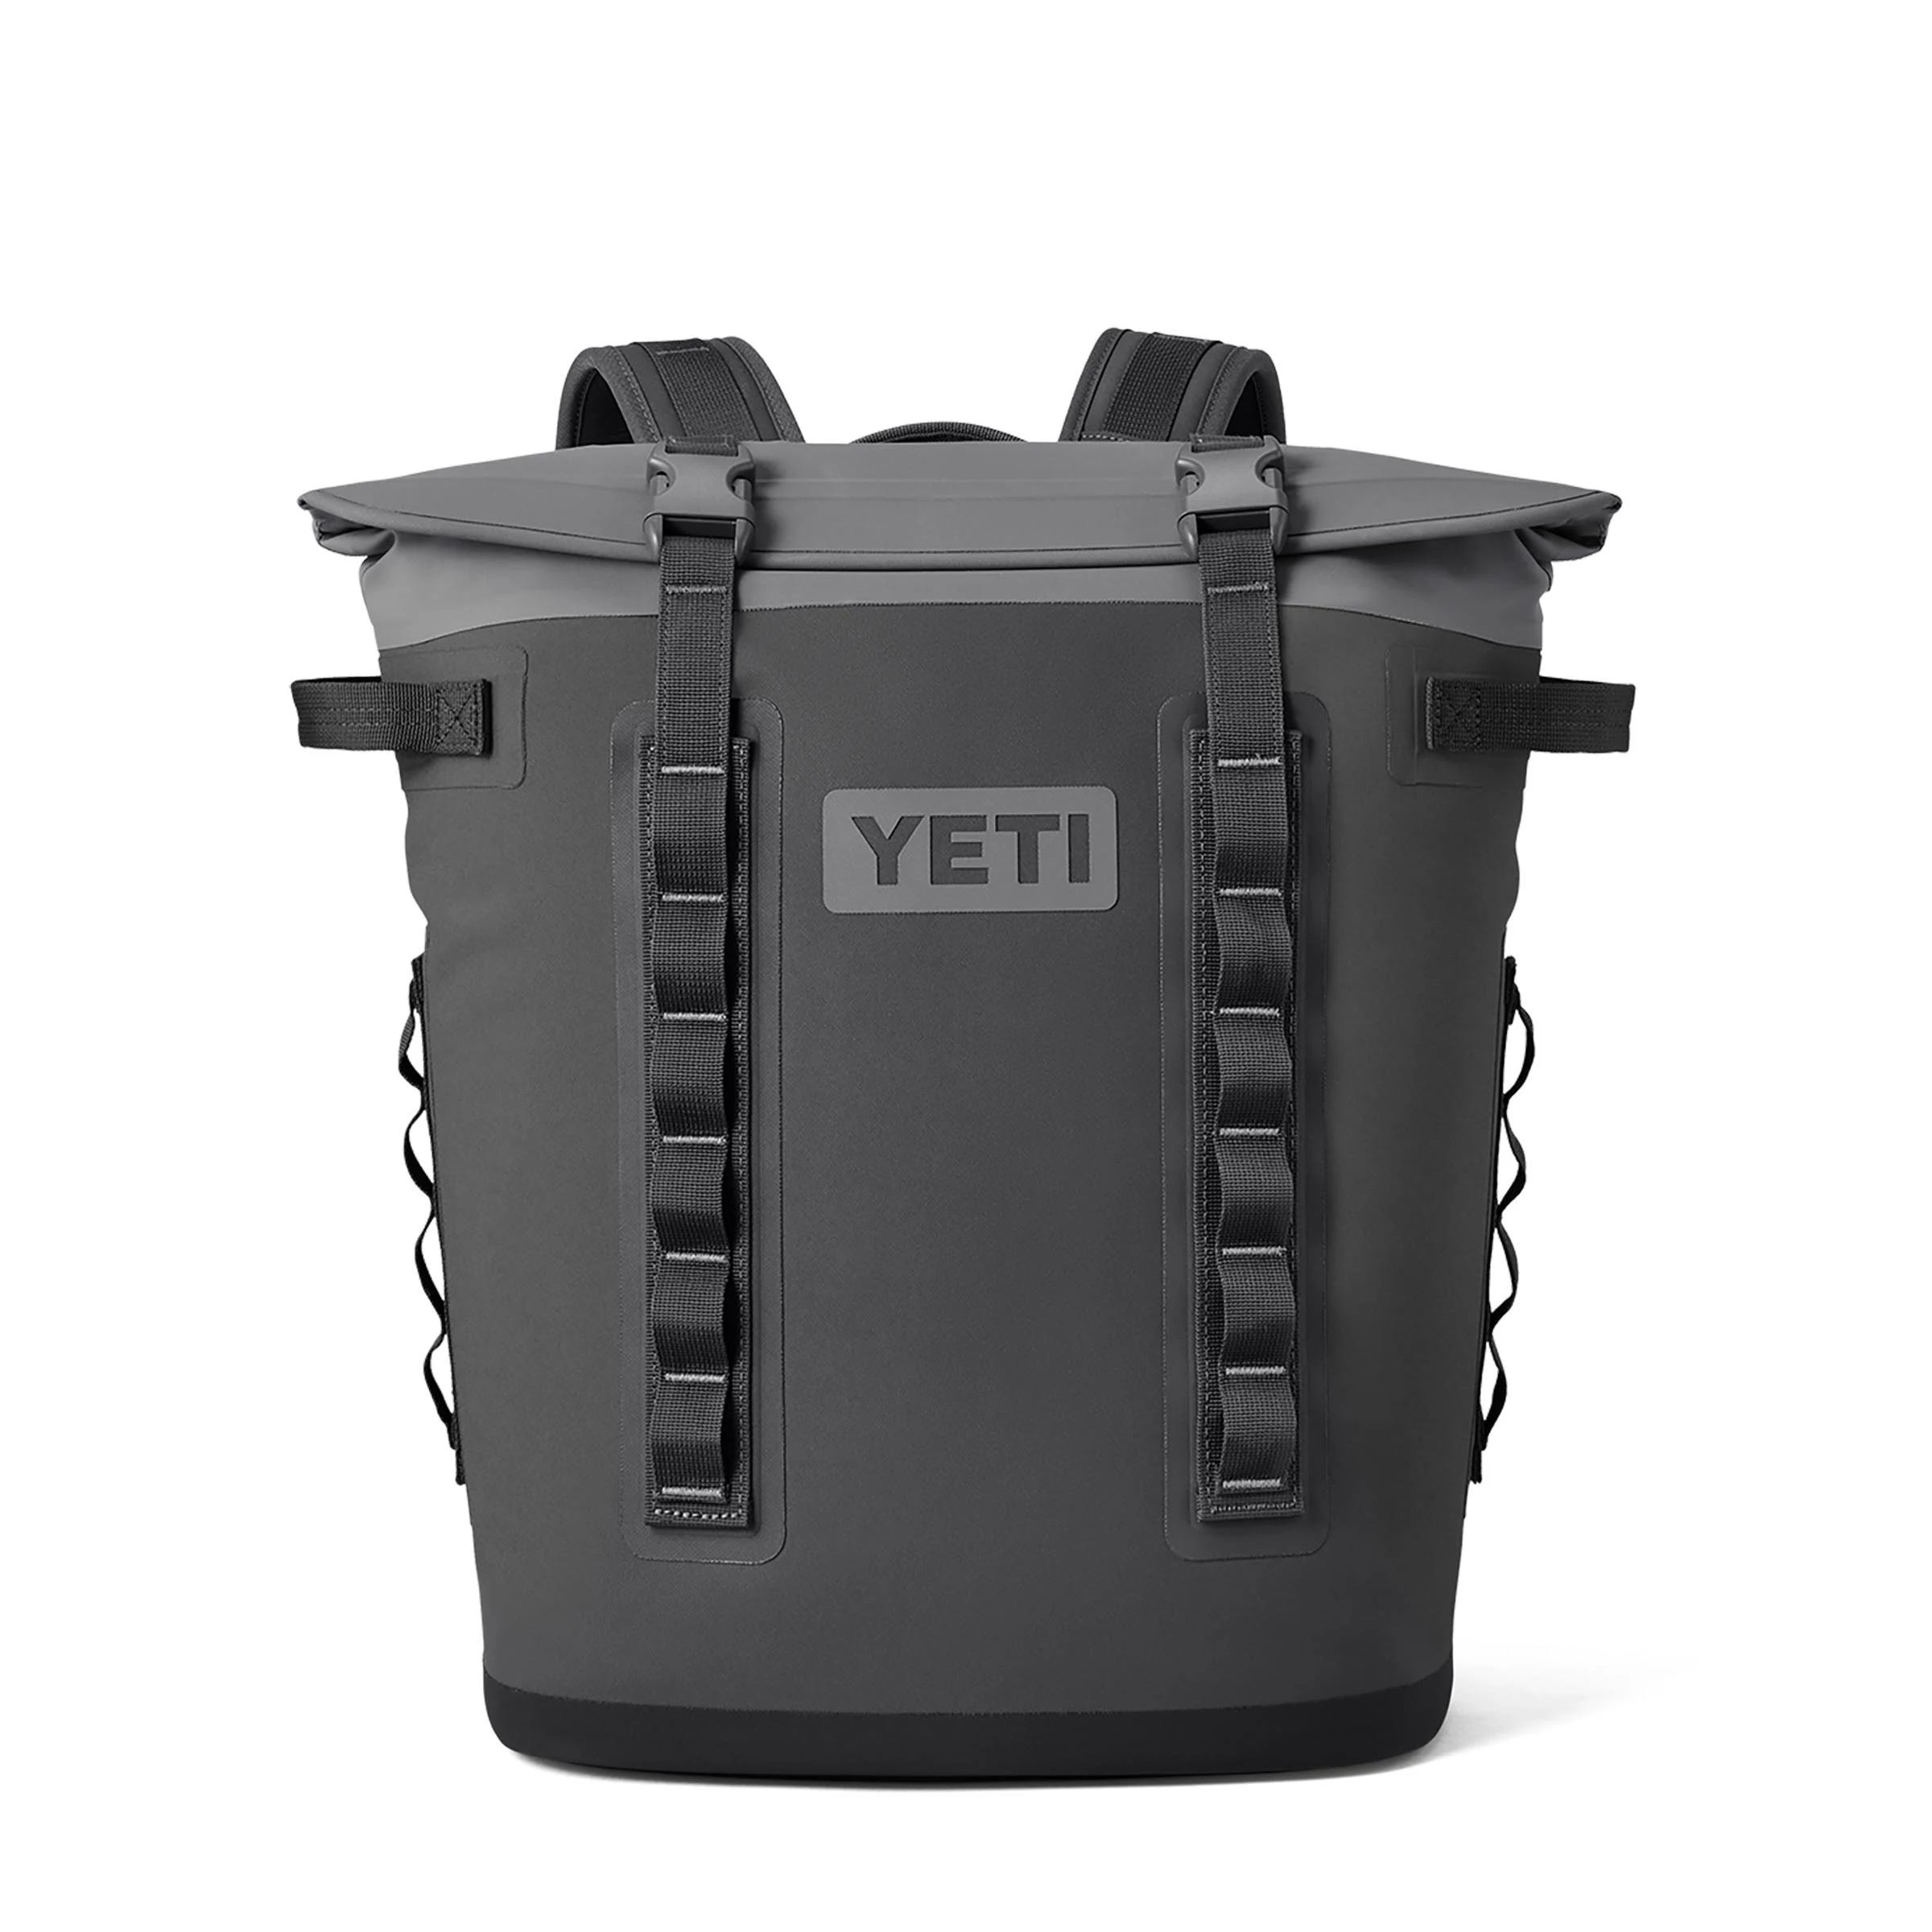 Yeti Hopper M20 Soft Cooler Backpack for Beverages | Image